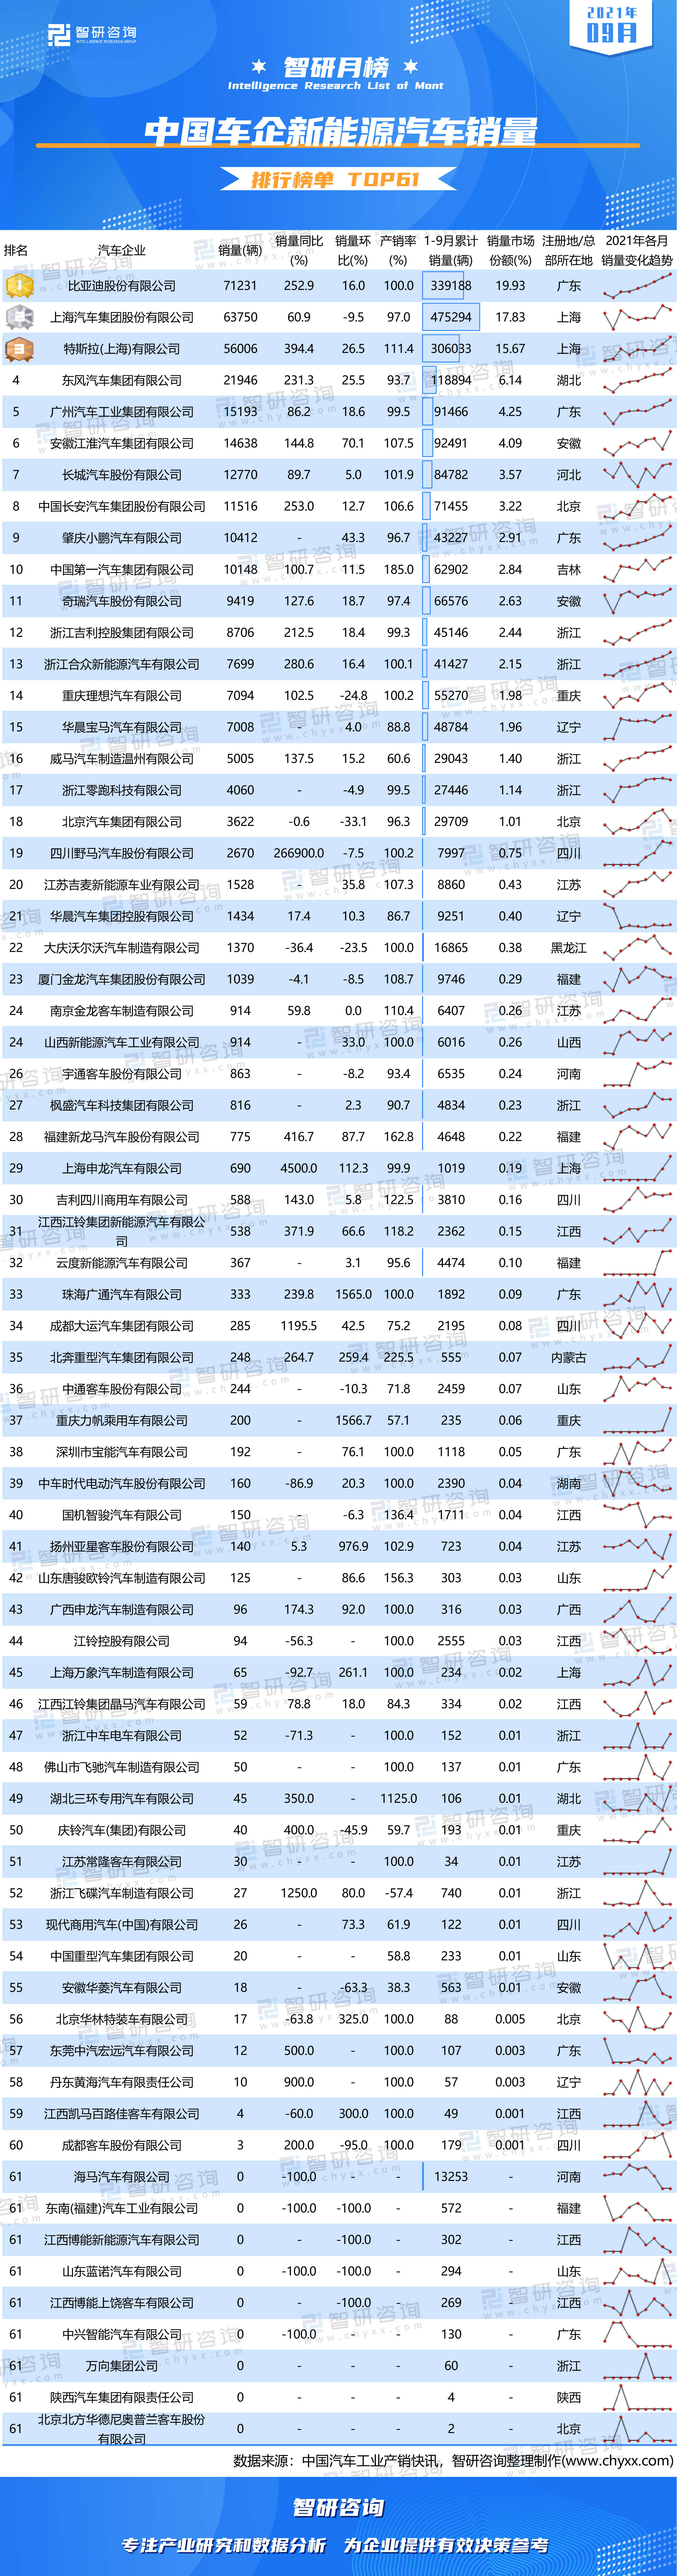 2021年9月suv销量排行榜_2021年9月中国车企新能源汽车销量排行榜:3家车企市场份额均超过...